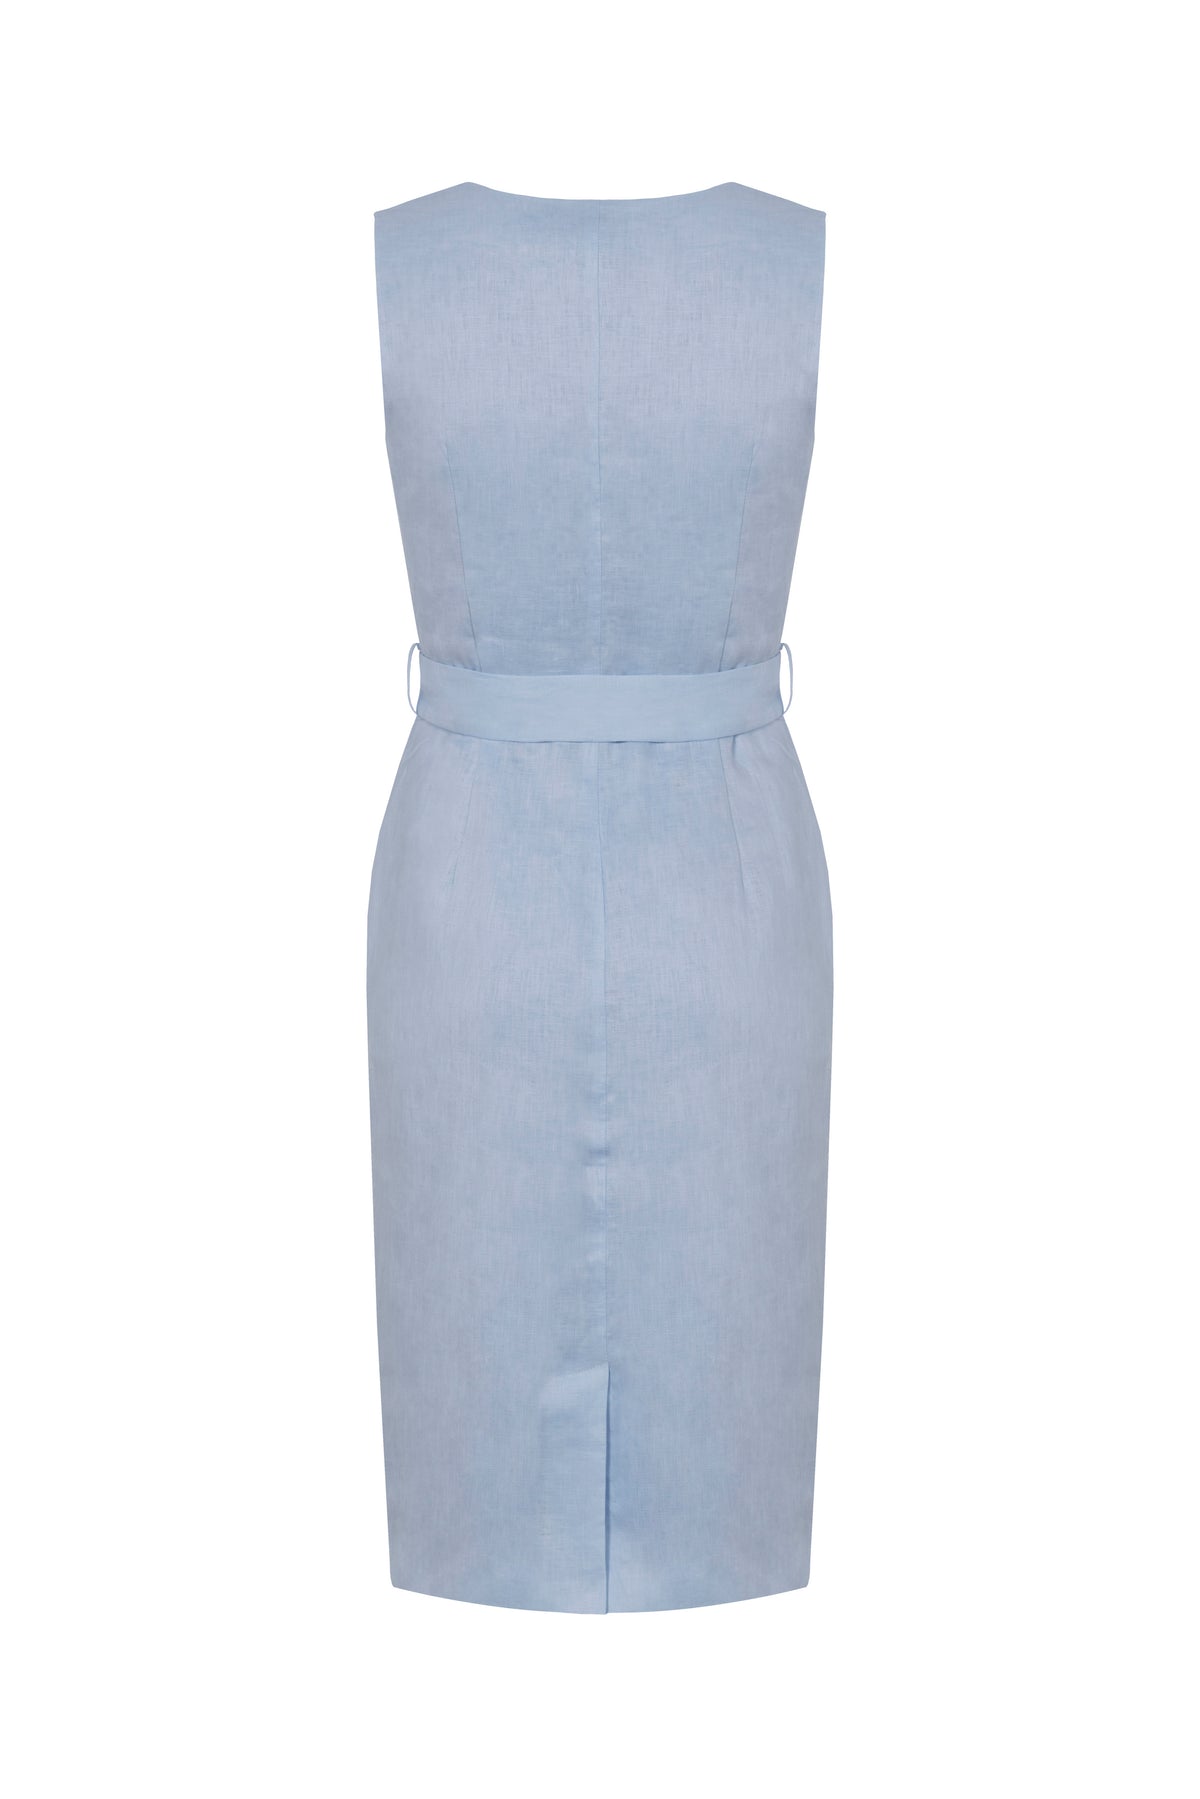 Linen Dress (Powder Blue) | Aavelle